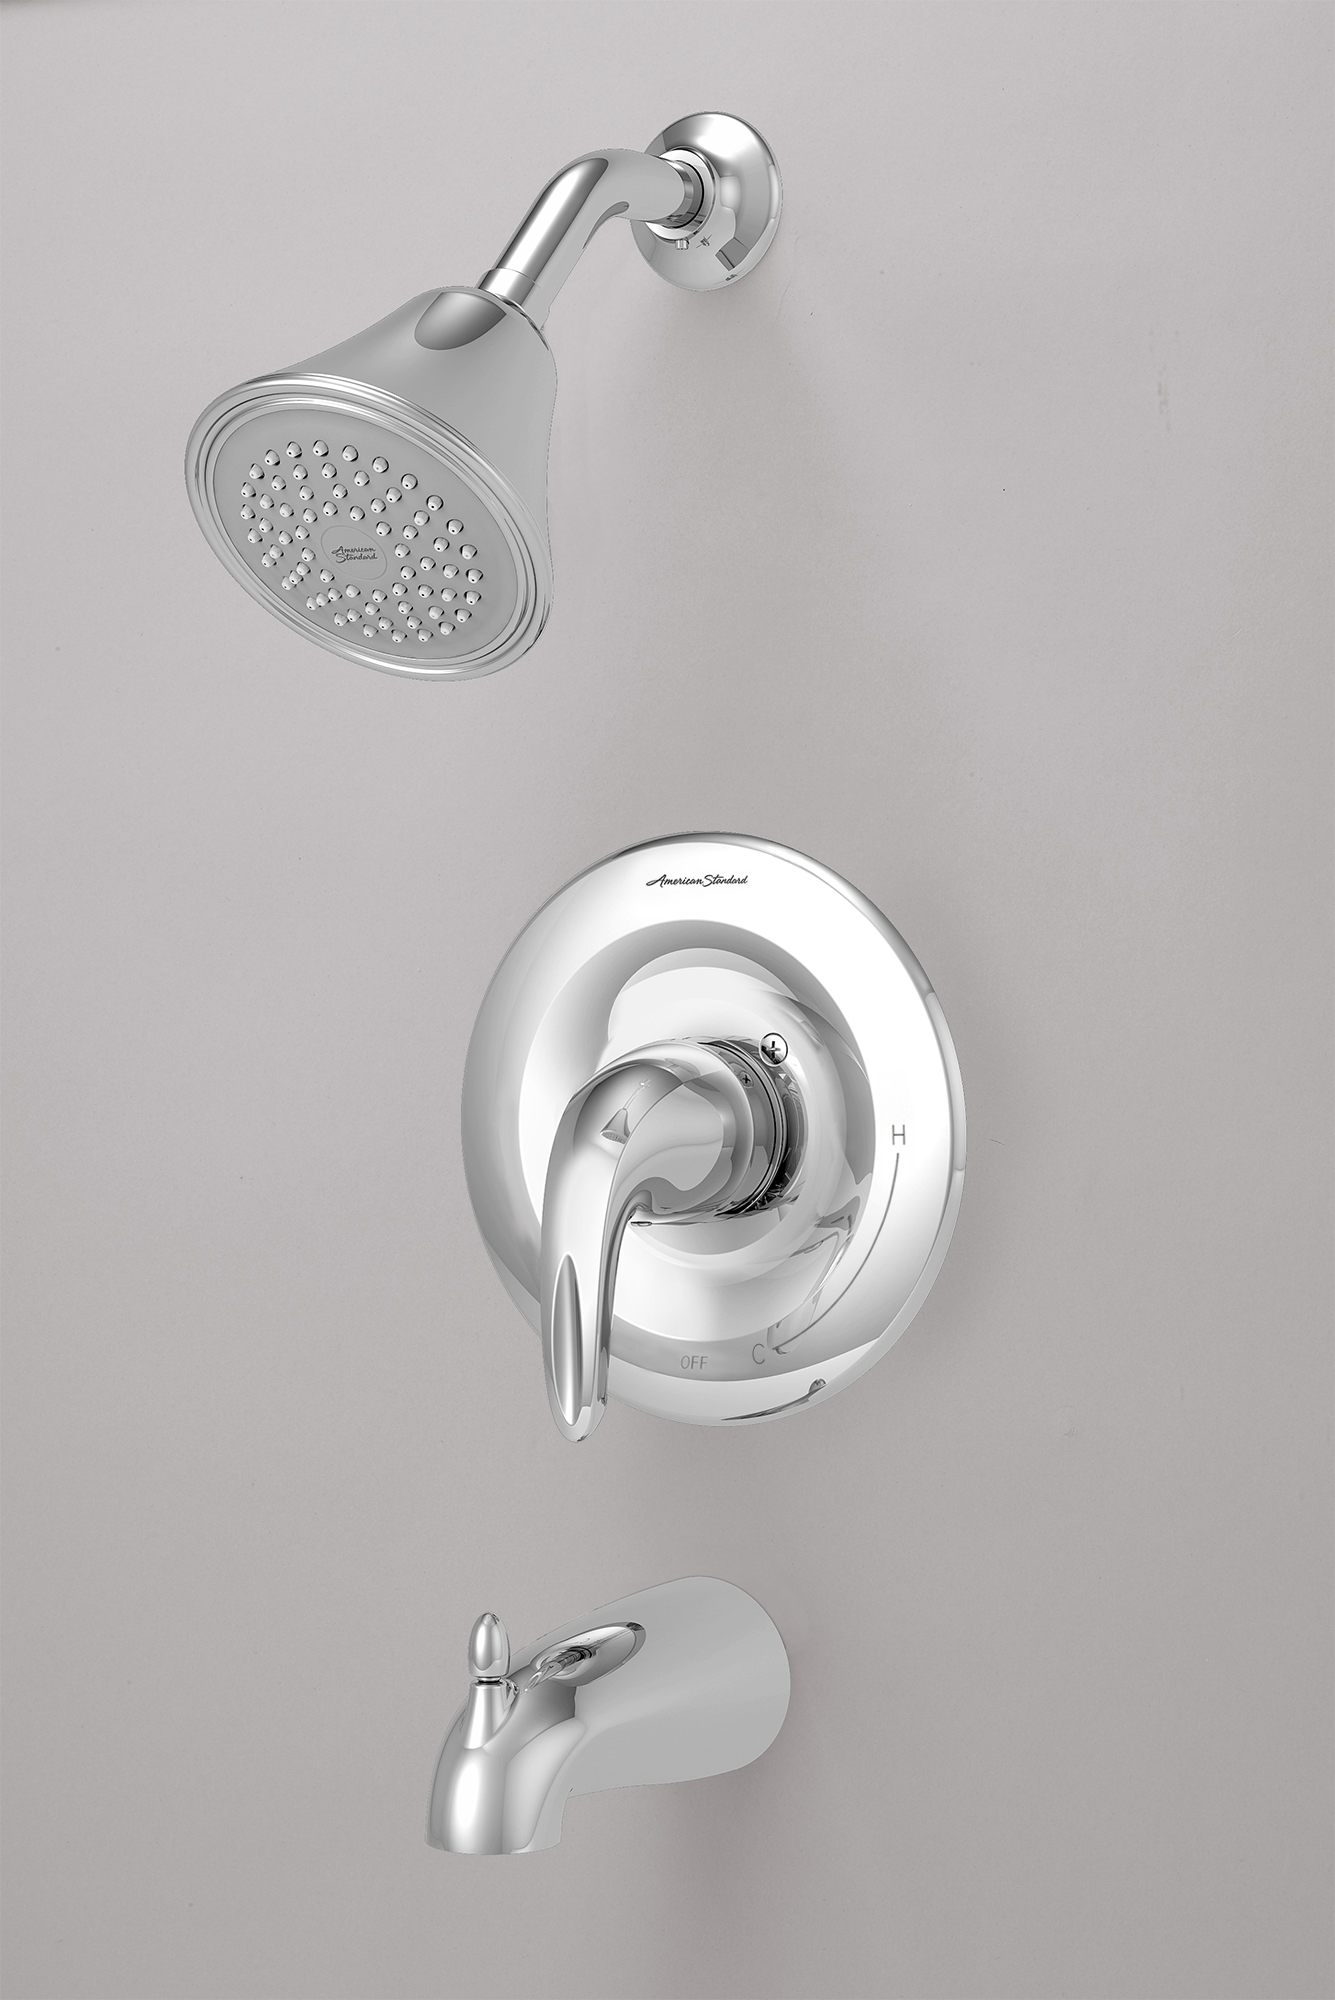 Reliant 3MC - Ensemble de robinetterie pour baignoire/douche 2,5 gpm/9,5 L/min incluant une pomme de douche, une cartouche à pression équilibrée en double céramique et une poignée à levier